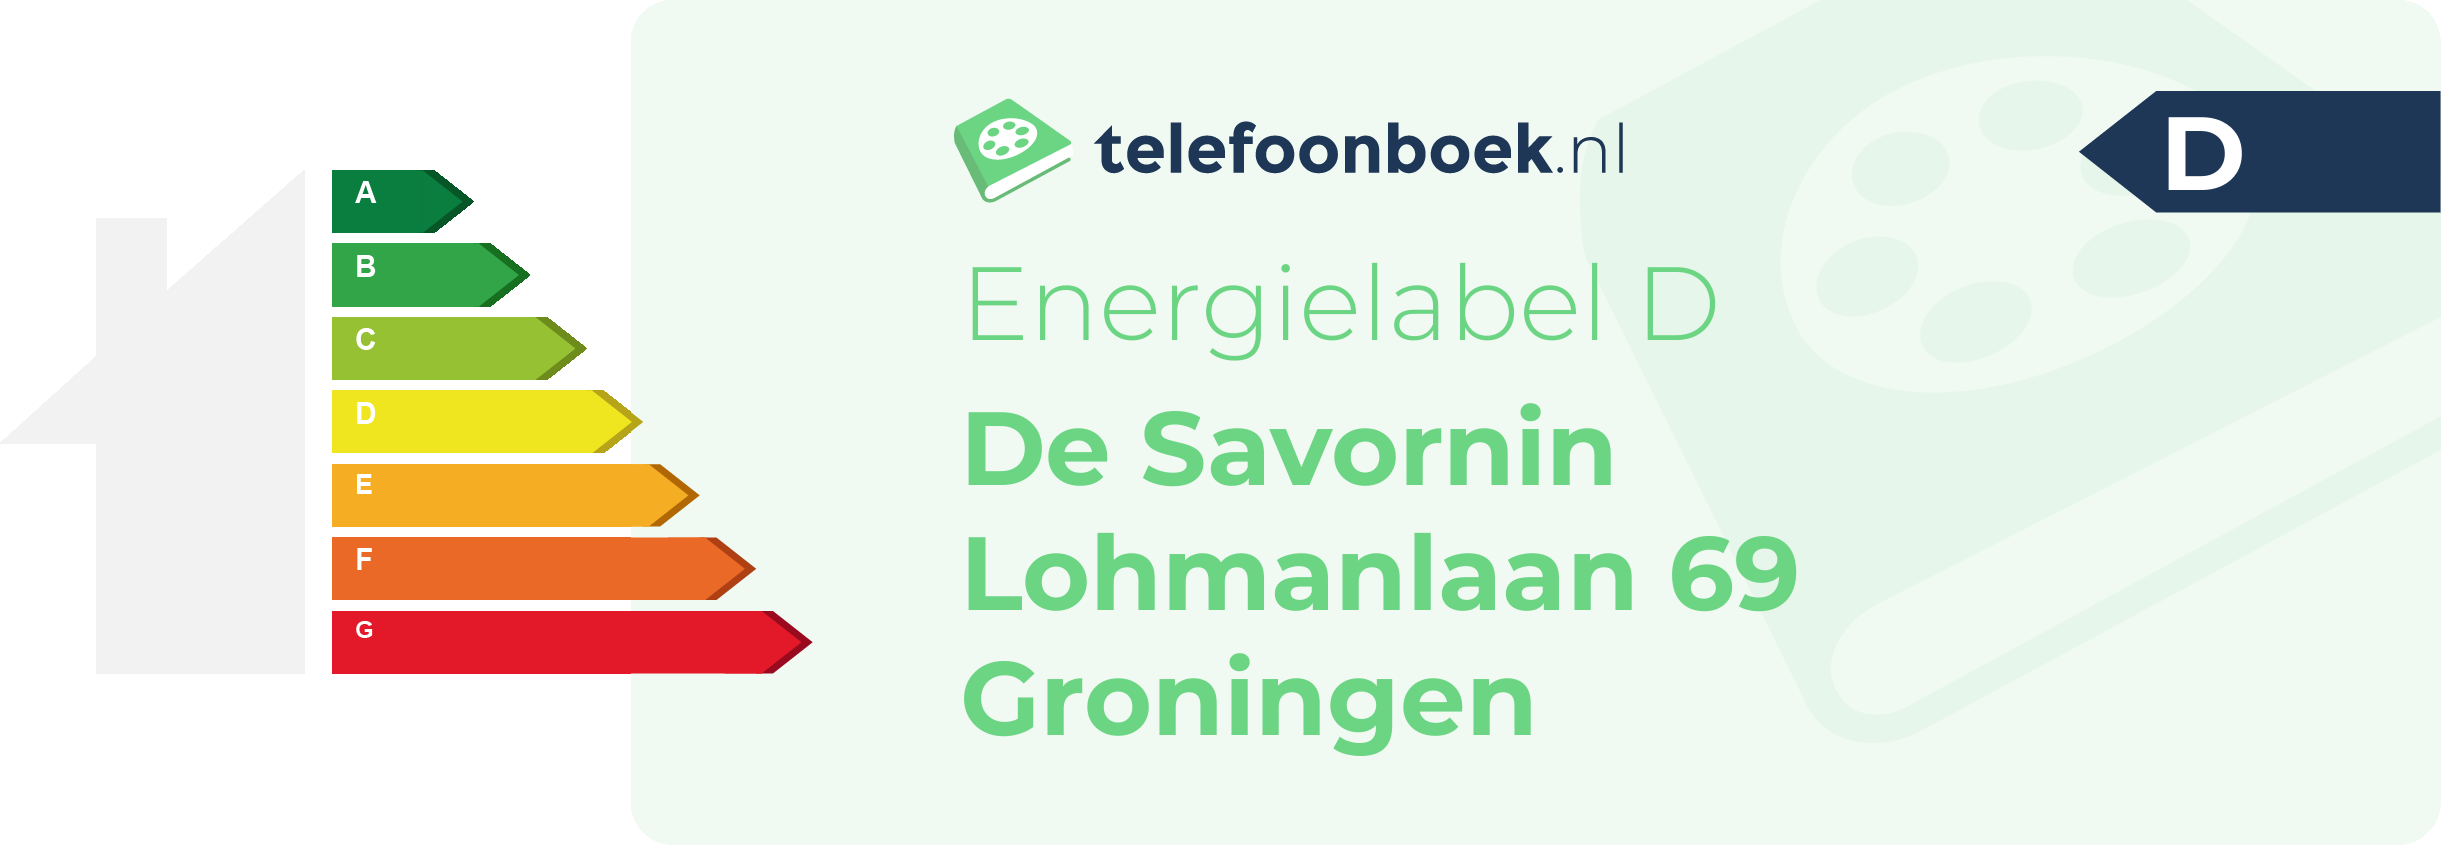 Energielabel De Savornin Lohmanlaan 69 Groningen